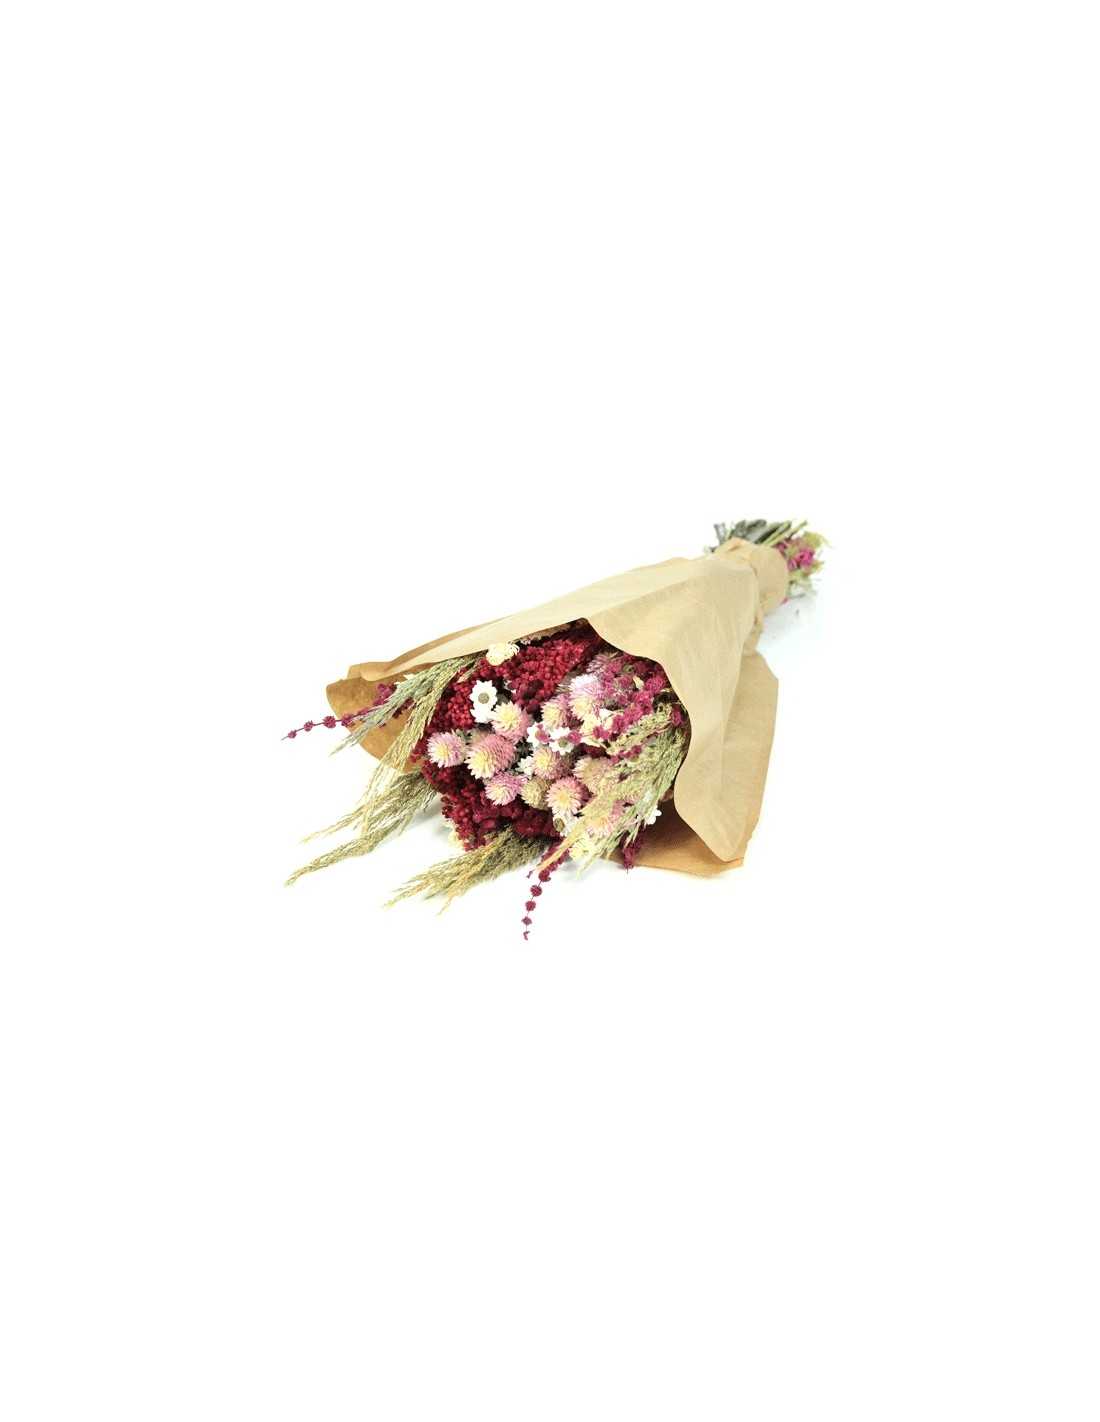 Compra Ramo de flores secas - Naturales - 60 cm al por mayor